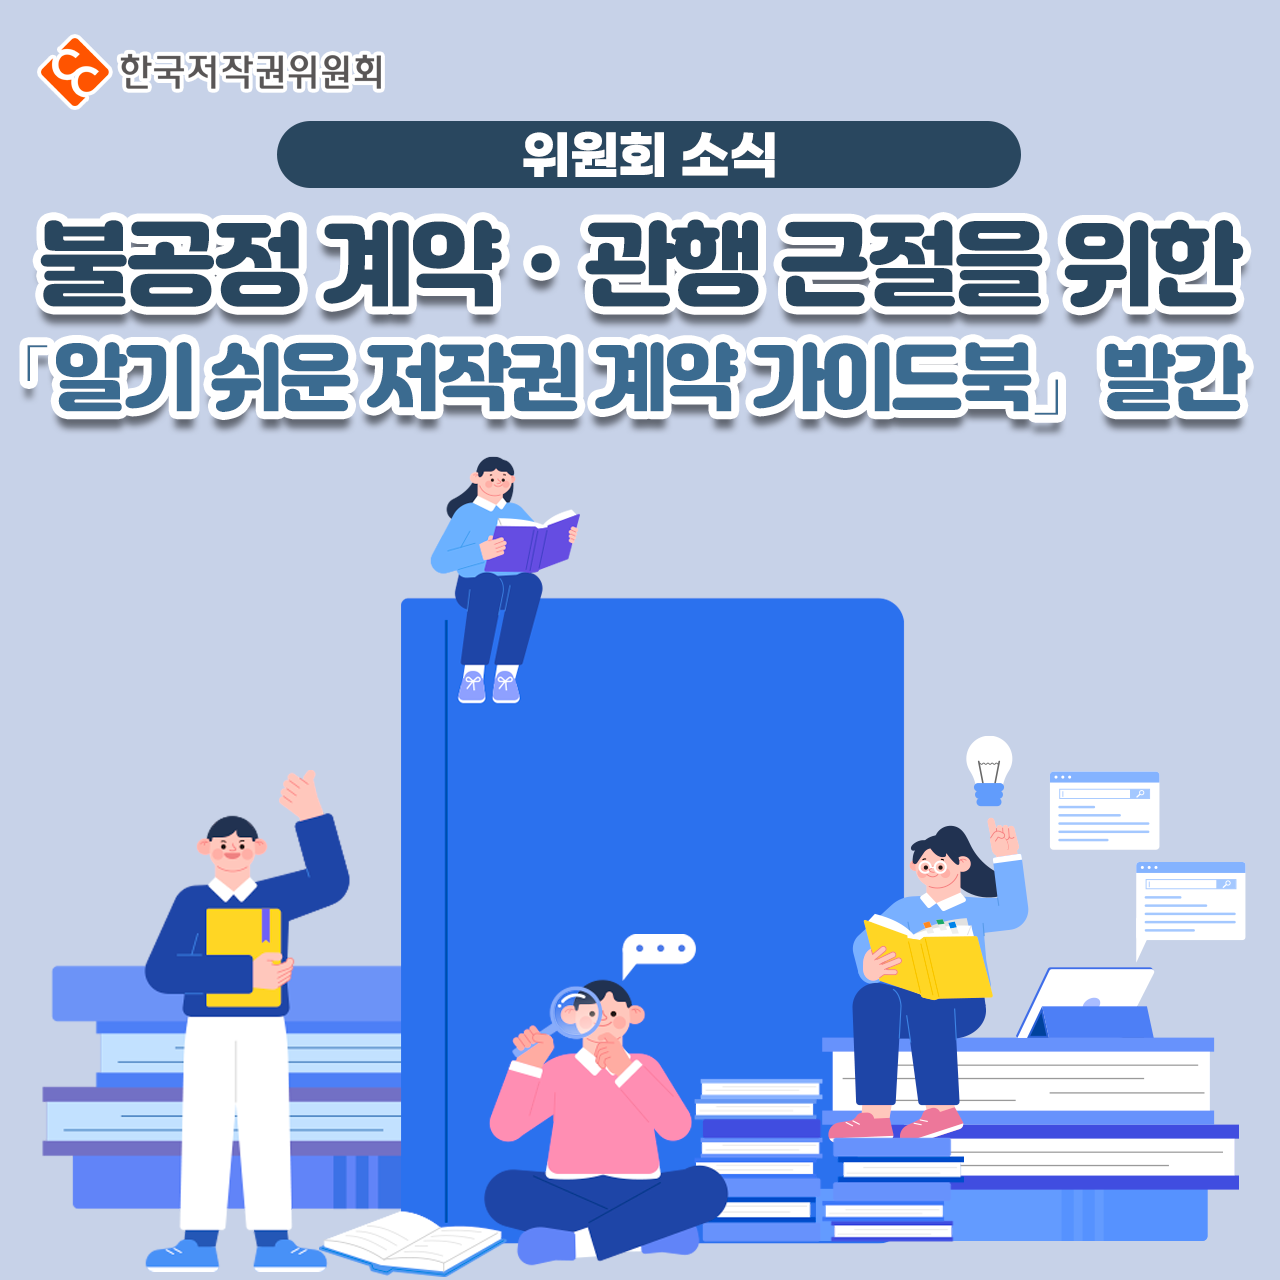 한국저작권위원회 KOREA COPYRIGHT COMMISSION 페이스북 새창열림